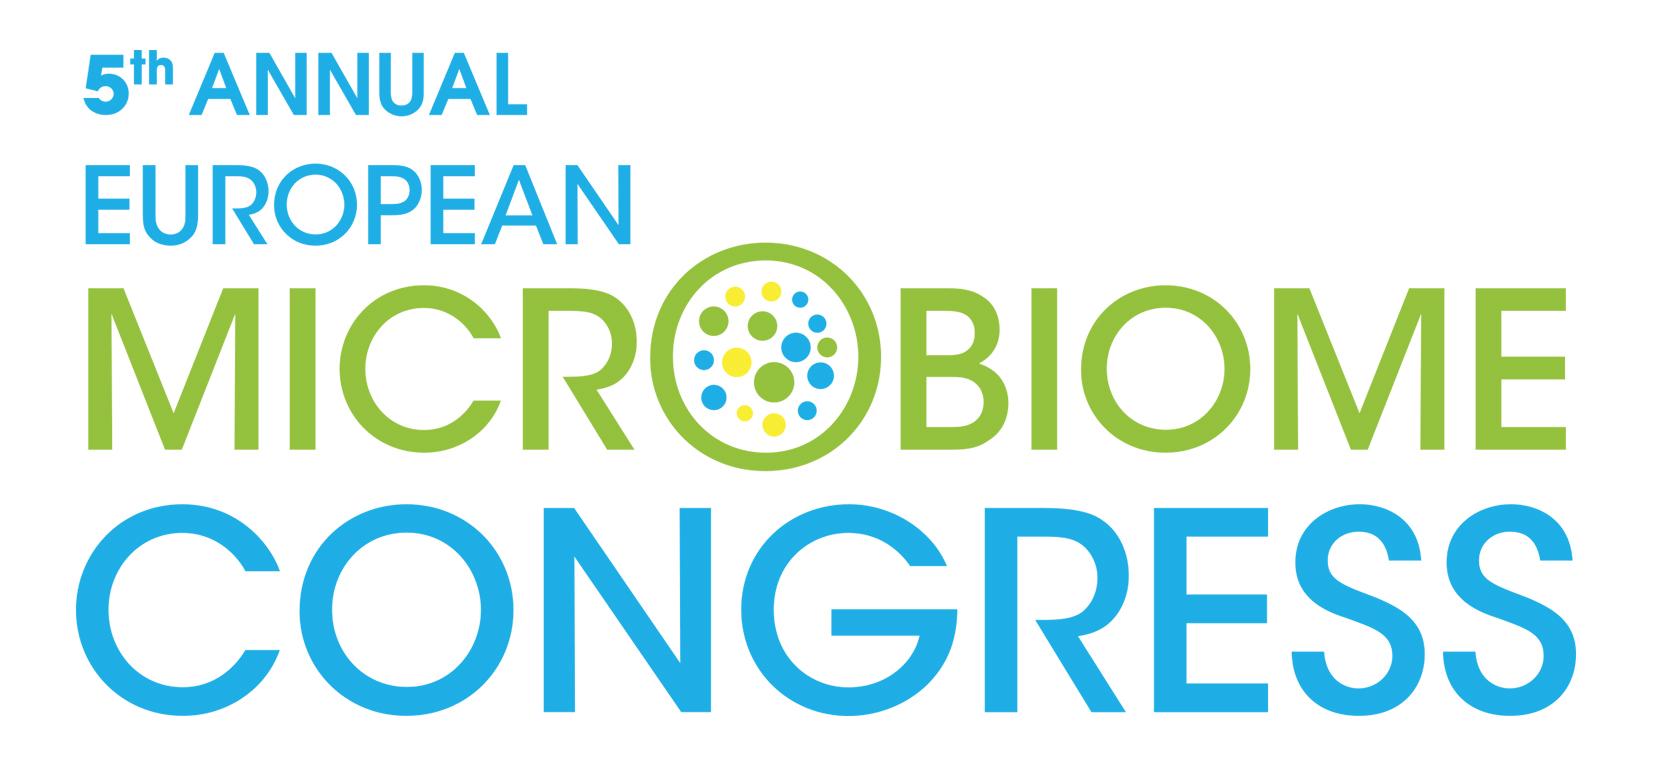 Microbiome Congress 2019